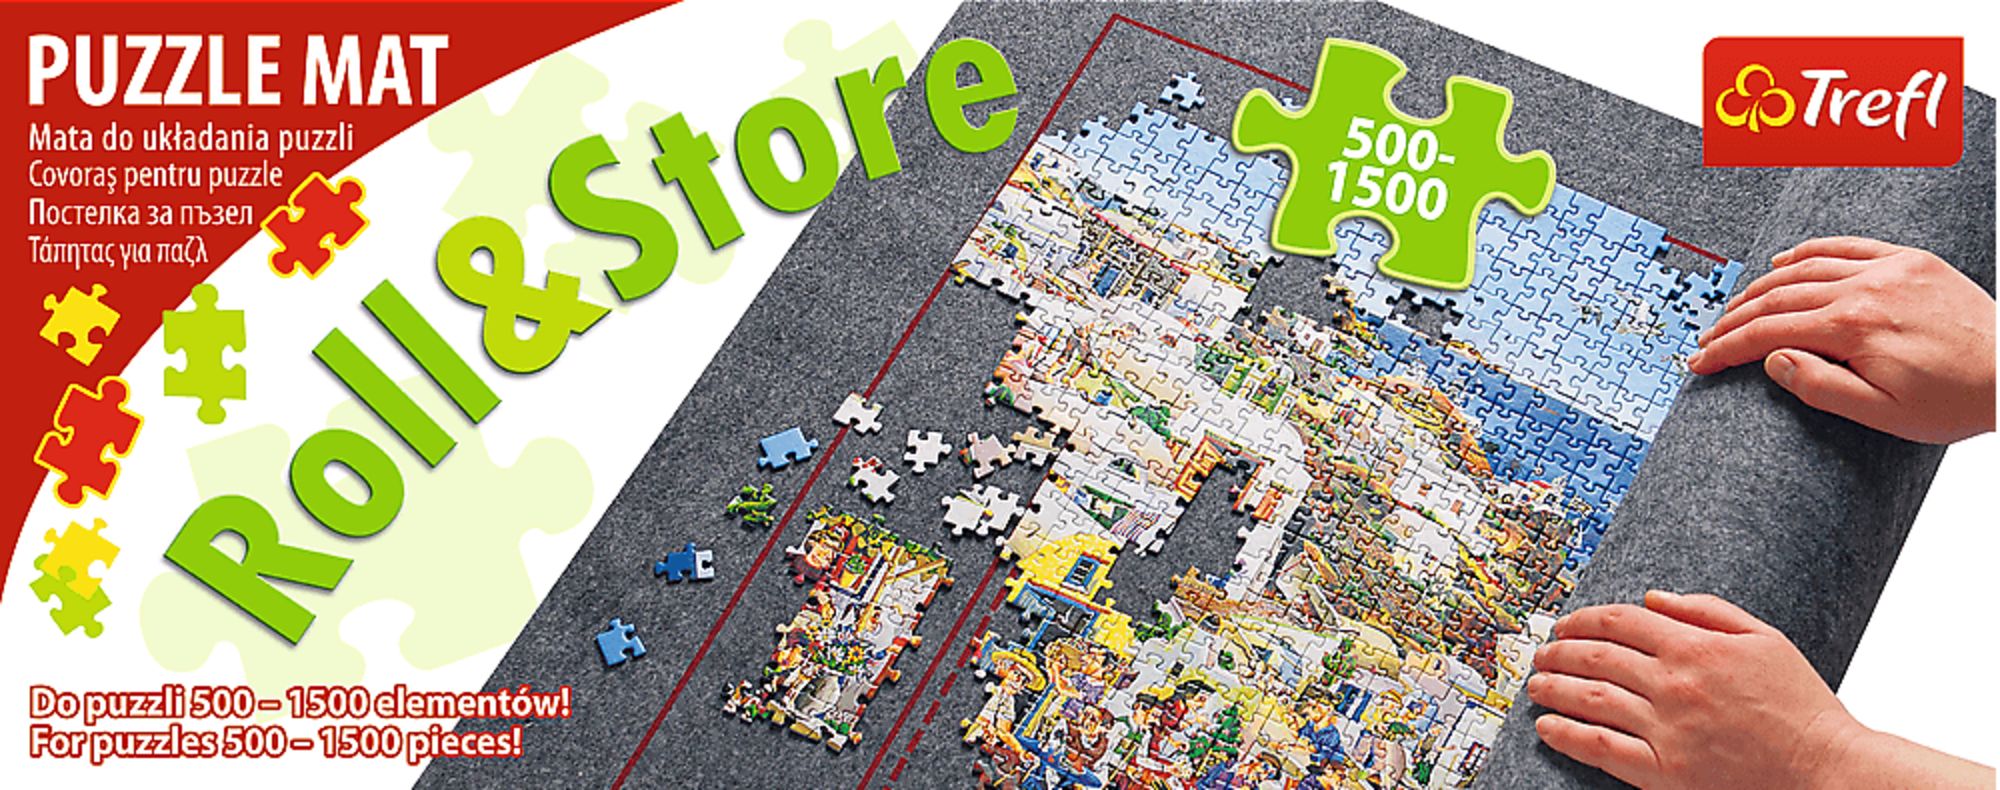 Puzzle-Matte, die für Puzzle-Puzzles aufgerollt wird, Speicher-Puzzle-Saver- Puzzle-Hüter für 500, 1000, 1500, 2000 Teile für Kinder und Erwachsene